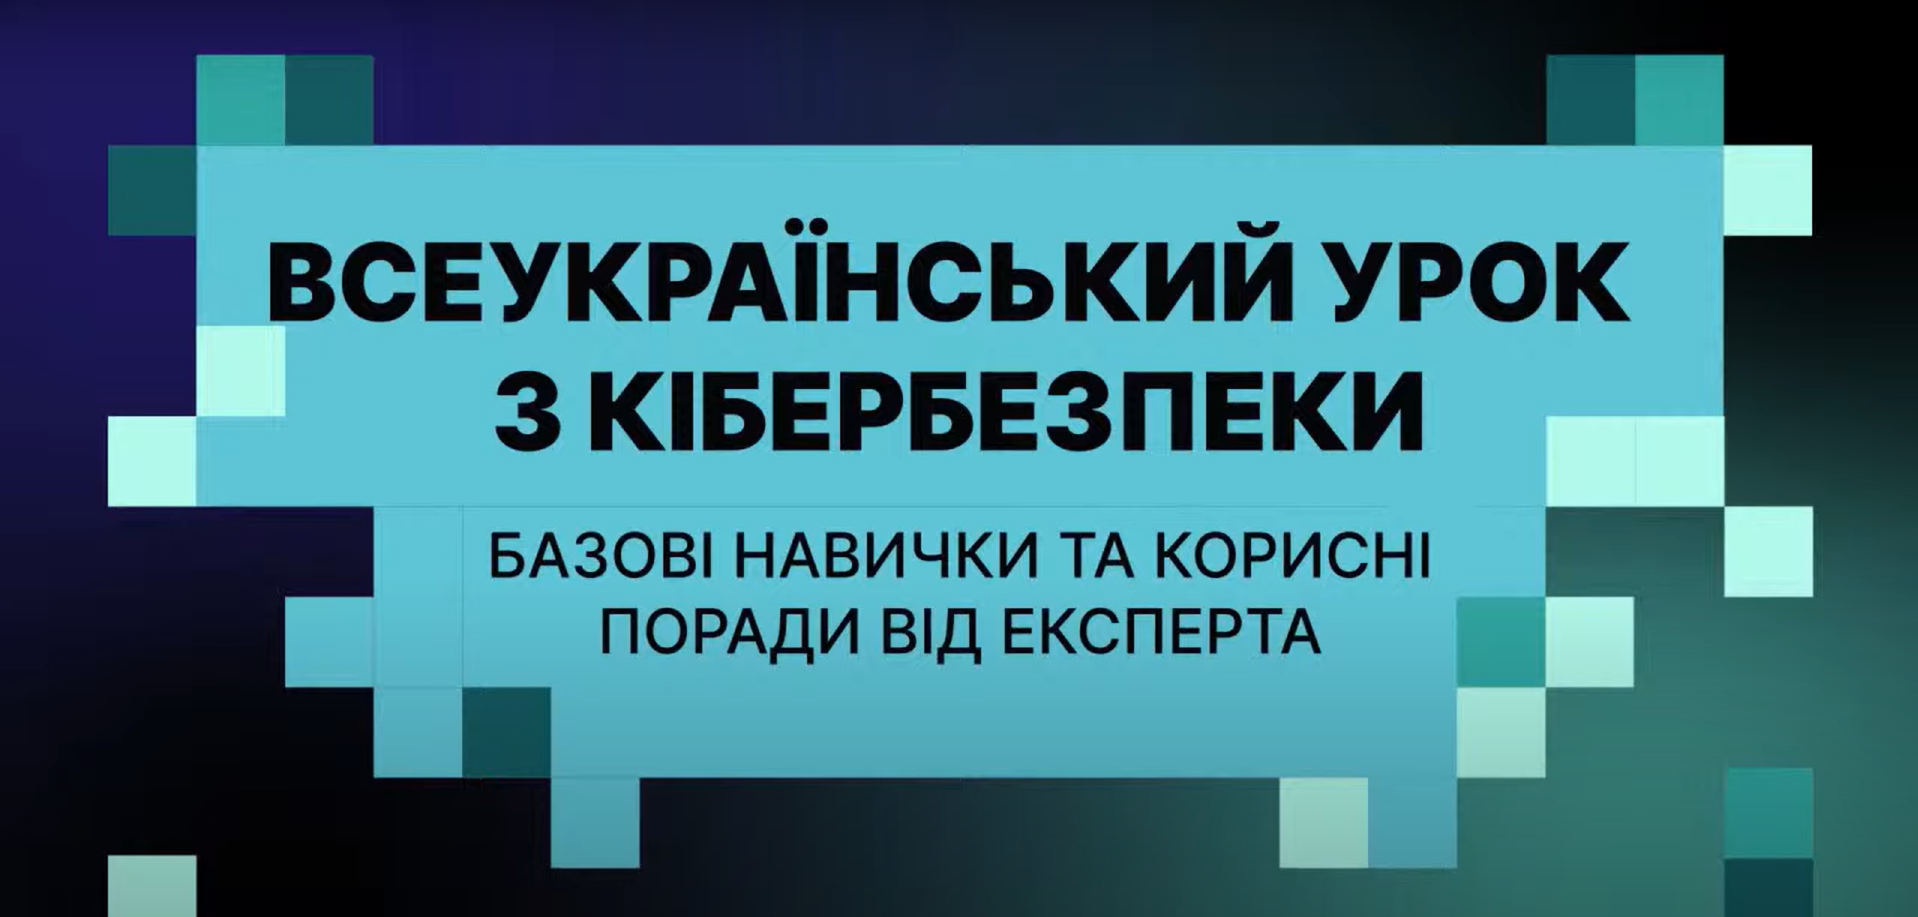 Всеукраїнський урок з кібергігієни: базові правила та корисні поради від експерта для безпеки онлайн